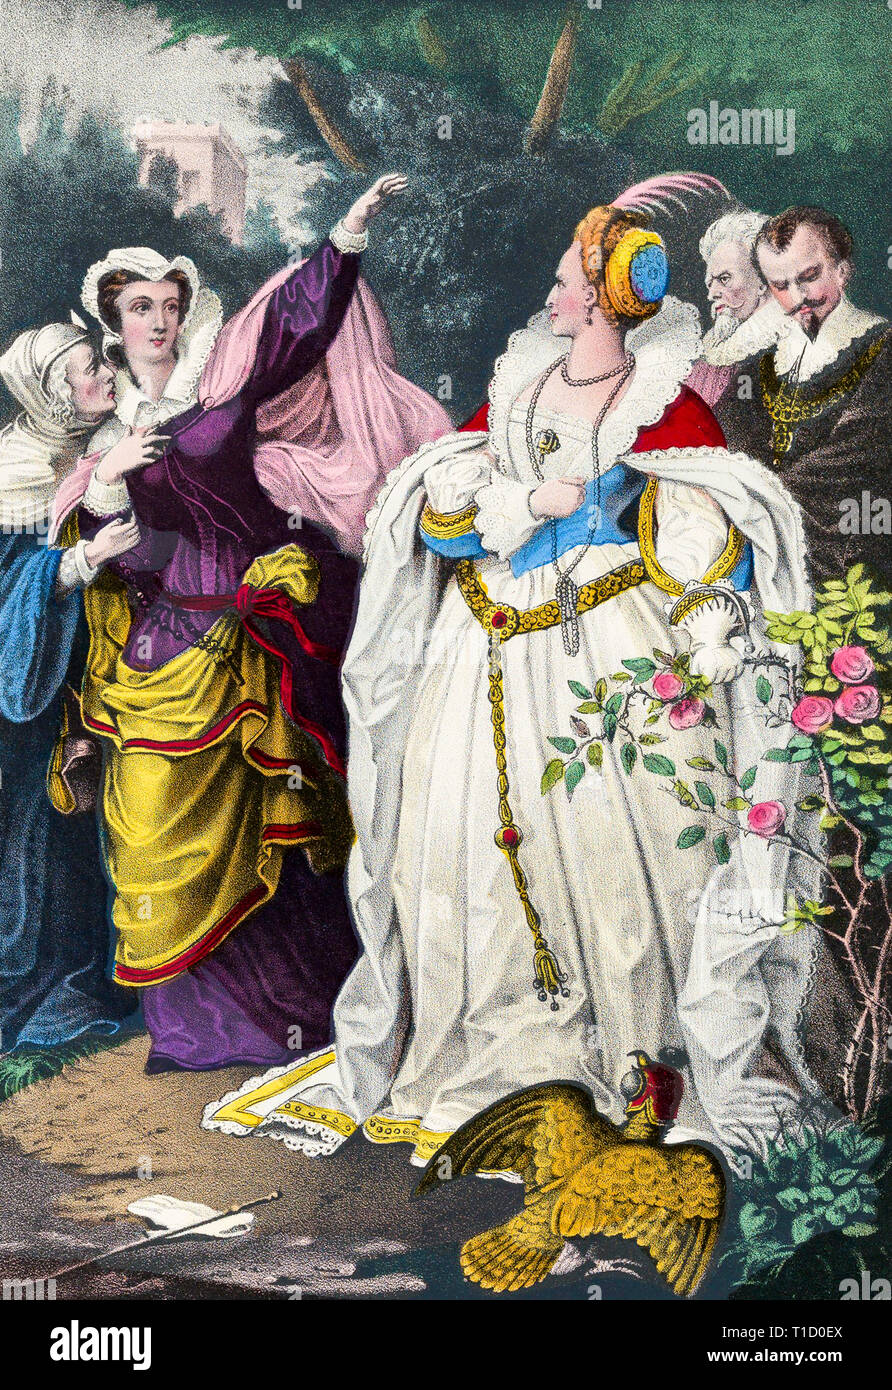 El rival de reinas, María, Reina de los Escoceses desafiando a la Reina Elizabeth I, Coloreado a mano, impresión Currier & Ives, c. 1857 Foto de stock